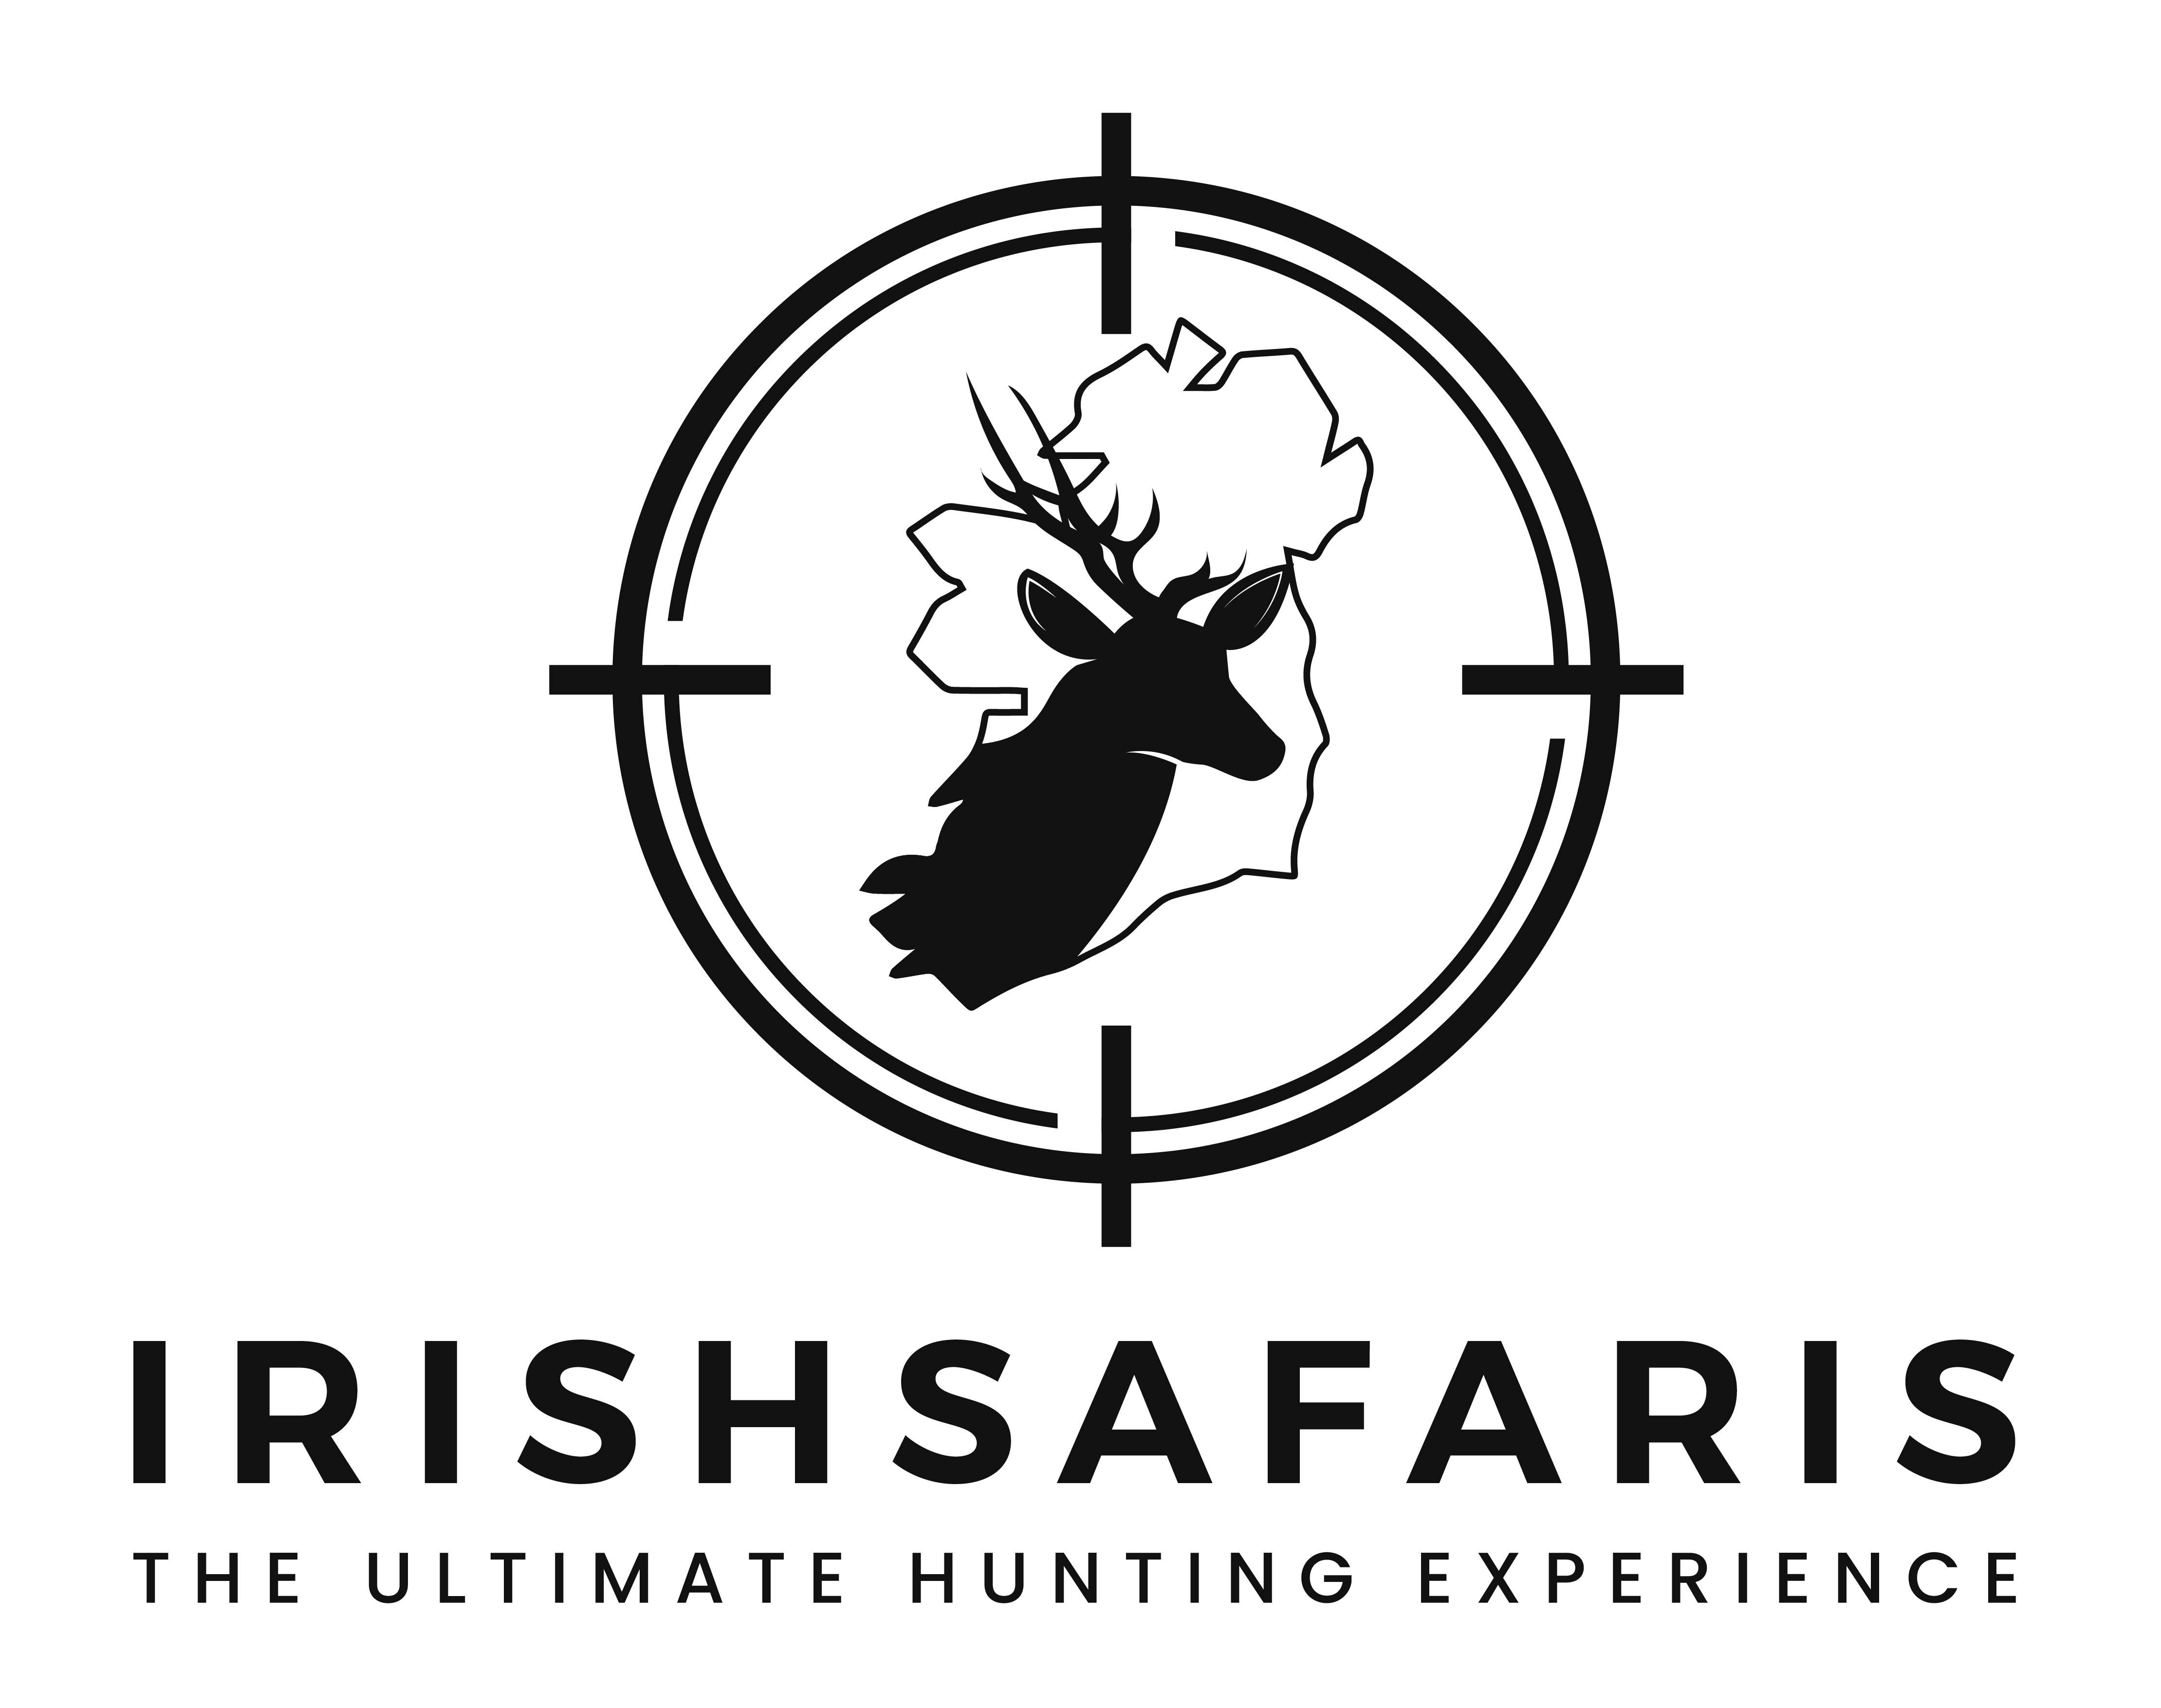 IrishSafaris